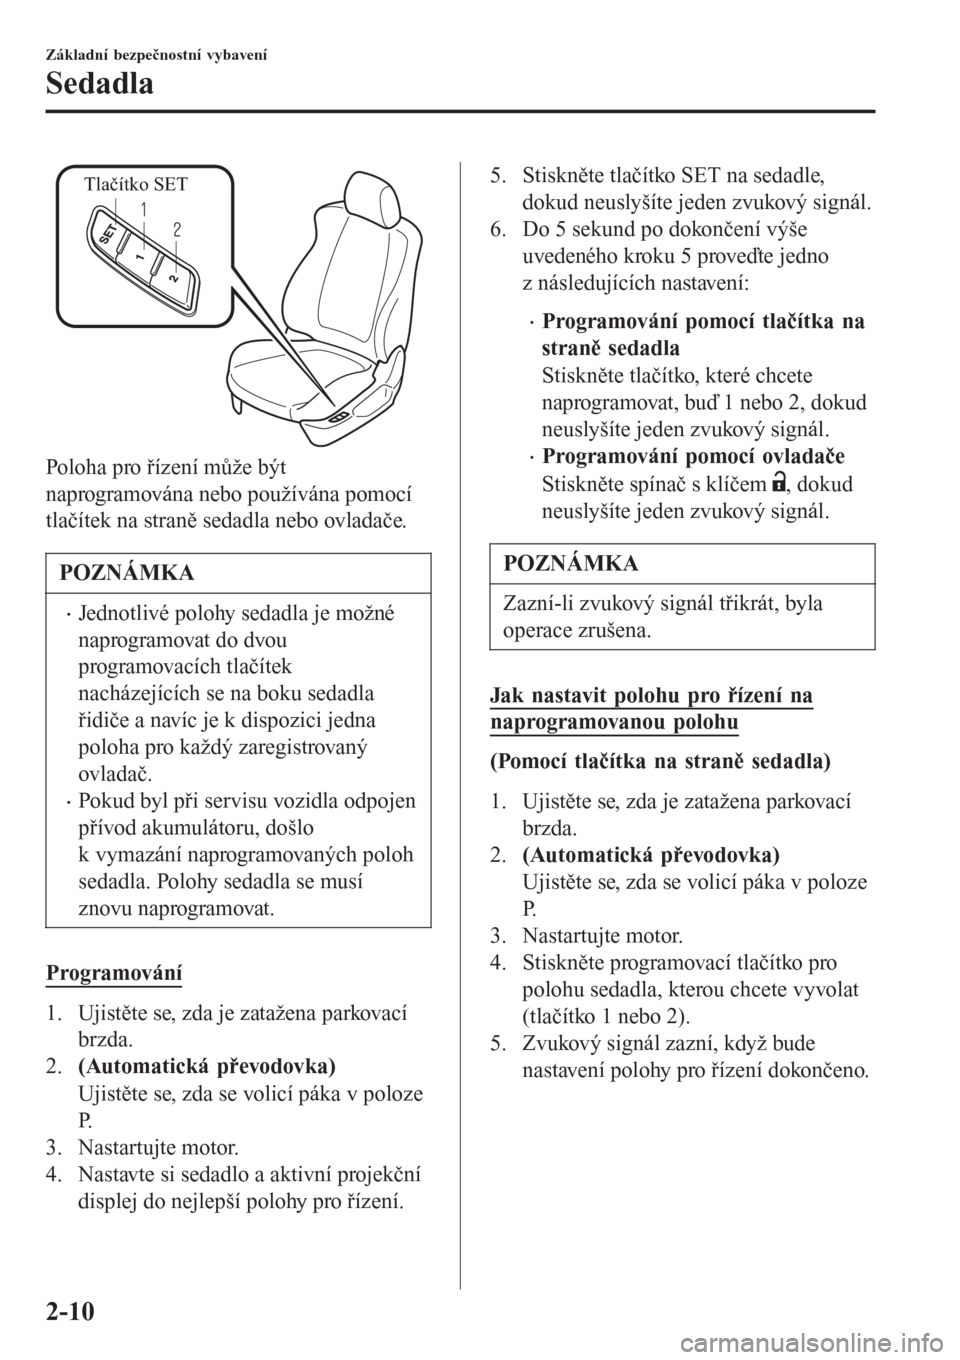 MAZDA MODEL 6 2016  Návod k obsluze (in Czech) Tlačítko SET
Poloha pro řízení může být
naprogramována nebo používána pomocí
tlačítek na straně sedadla nebo ovladače.
POZNÁMKA
•Jednotlivé polohy sedadla je možné
naprogramovat